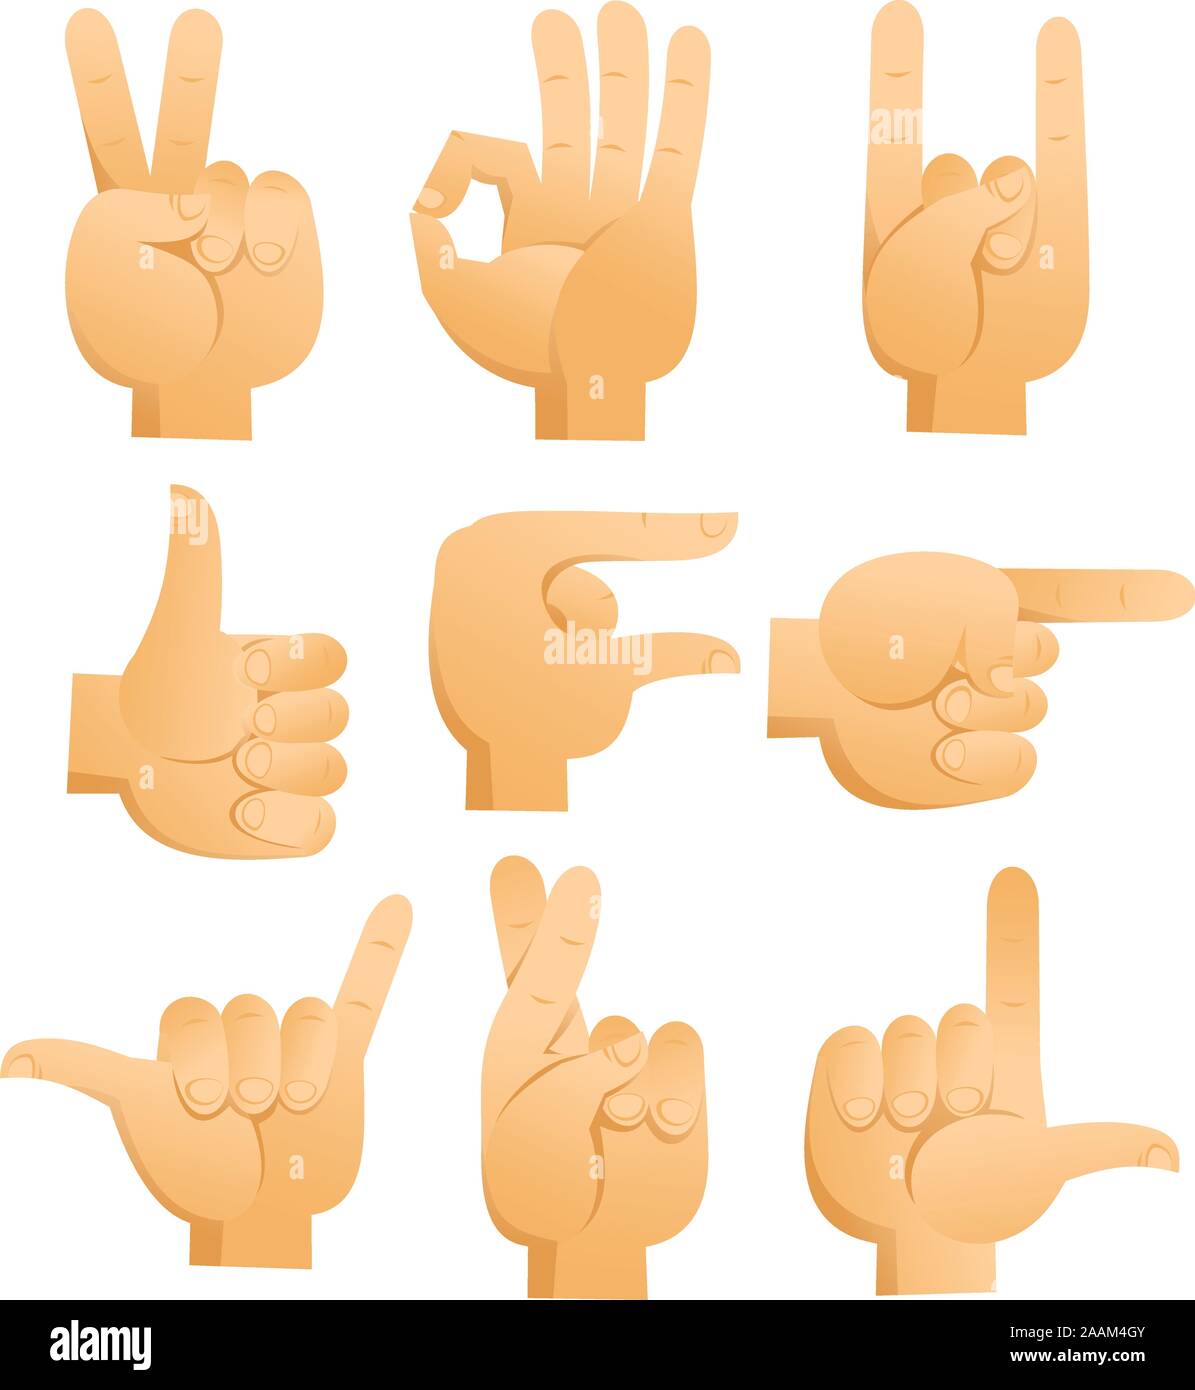 Las señales de mano de dibujos animados con el signo de la paz, ok signo,  signo de rock, suerte dedo firmar, señalando la mano, buena señal.  Ilustración vectorial de dibujos animados Imagen